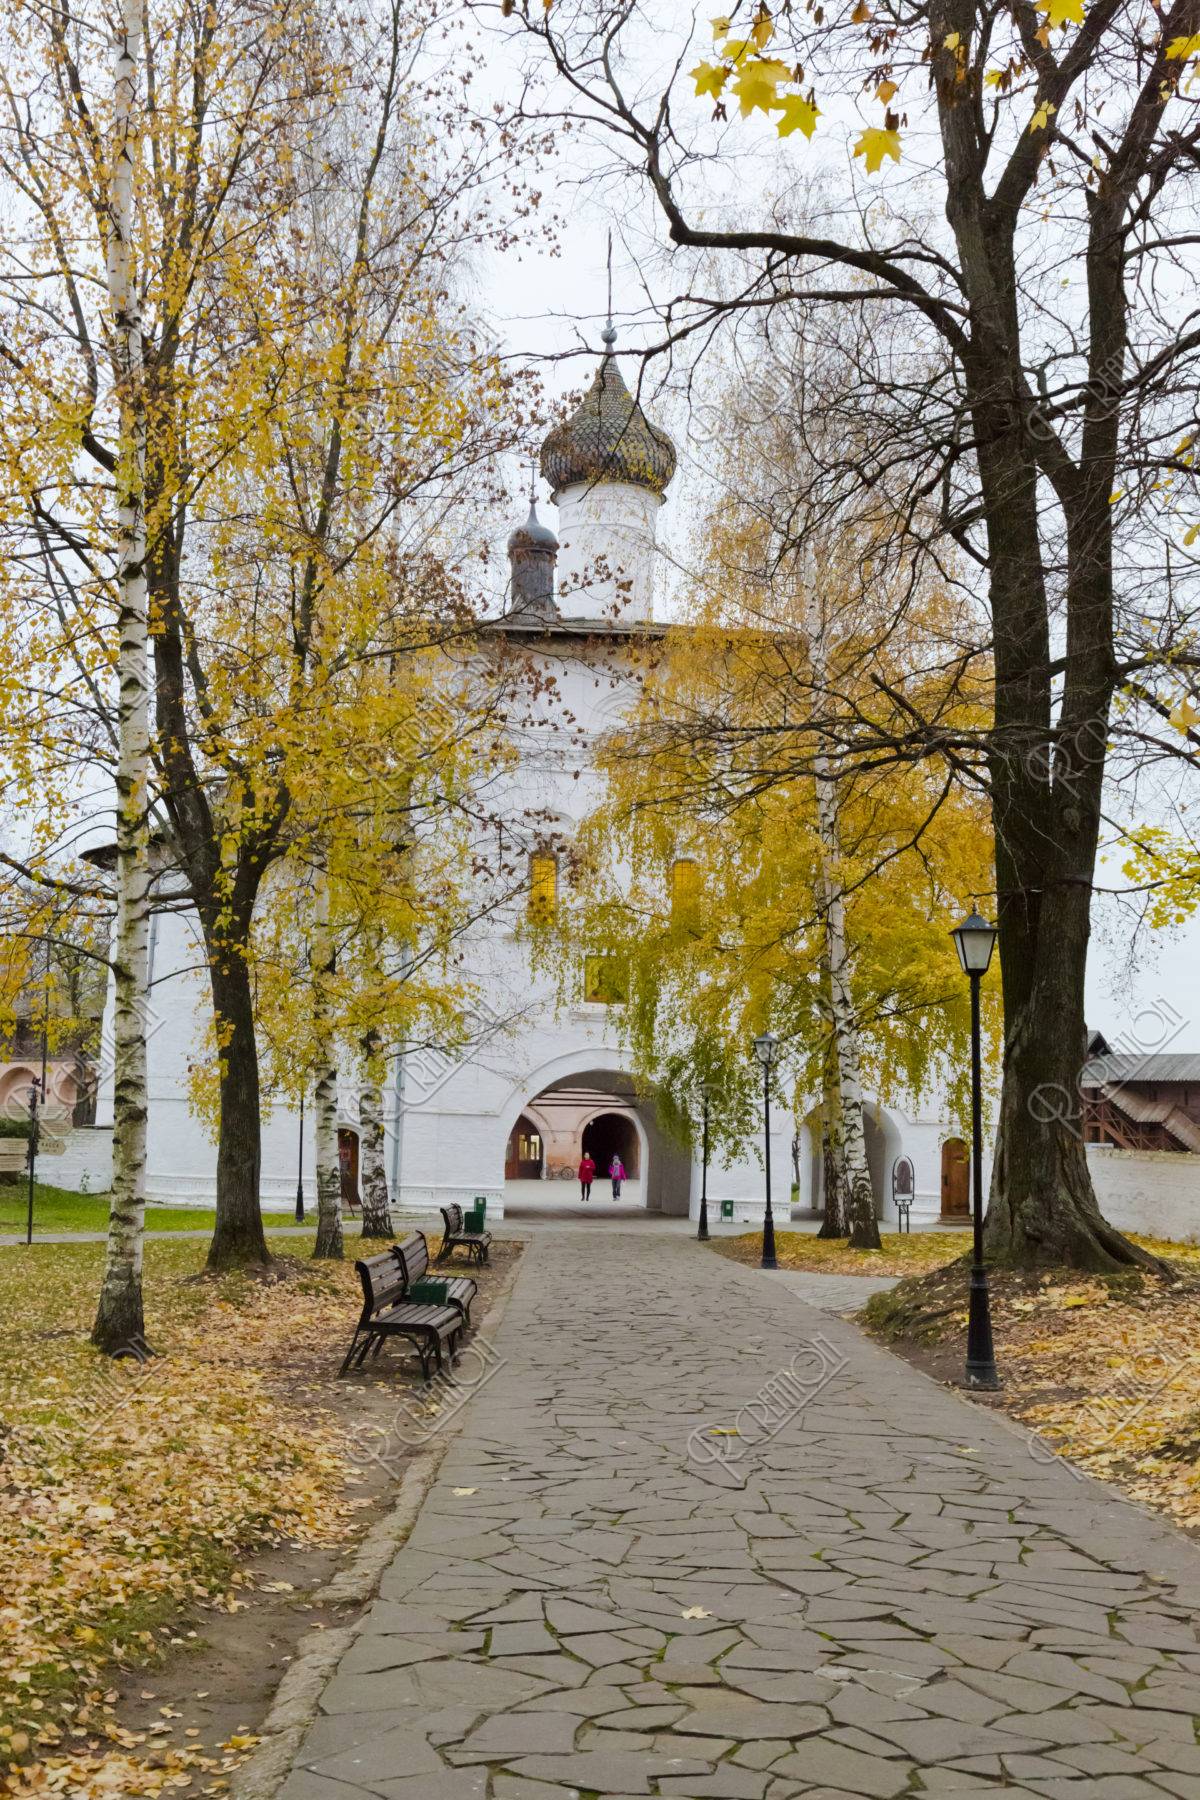 ブラゴヴェシチェンスカヤ教会